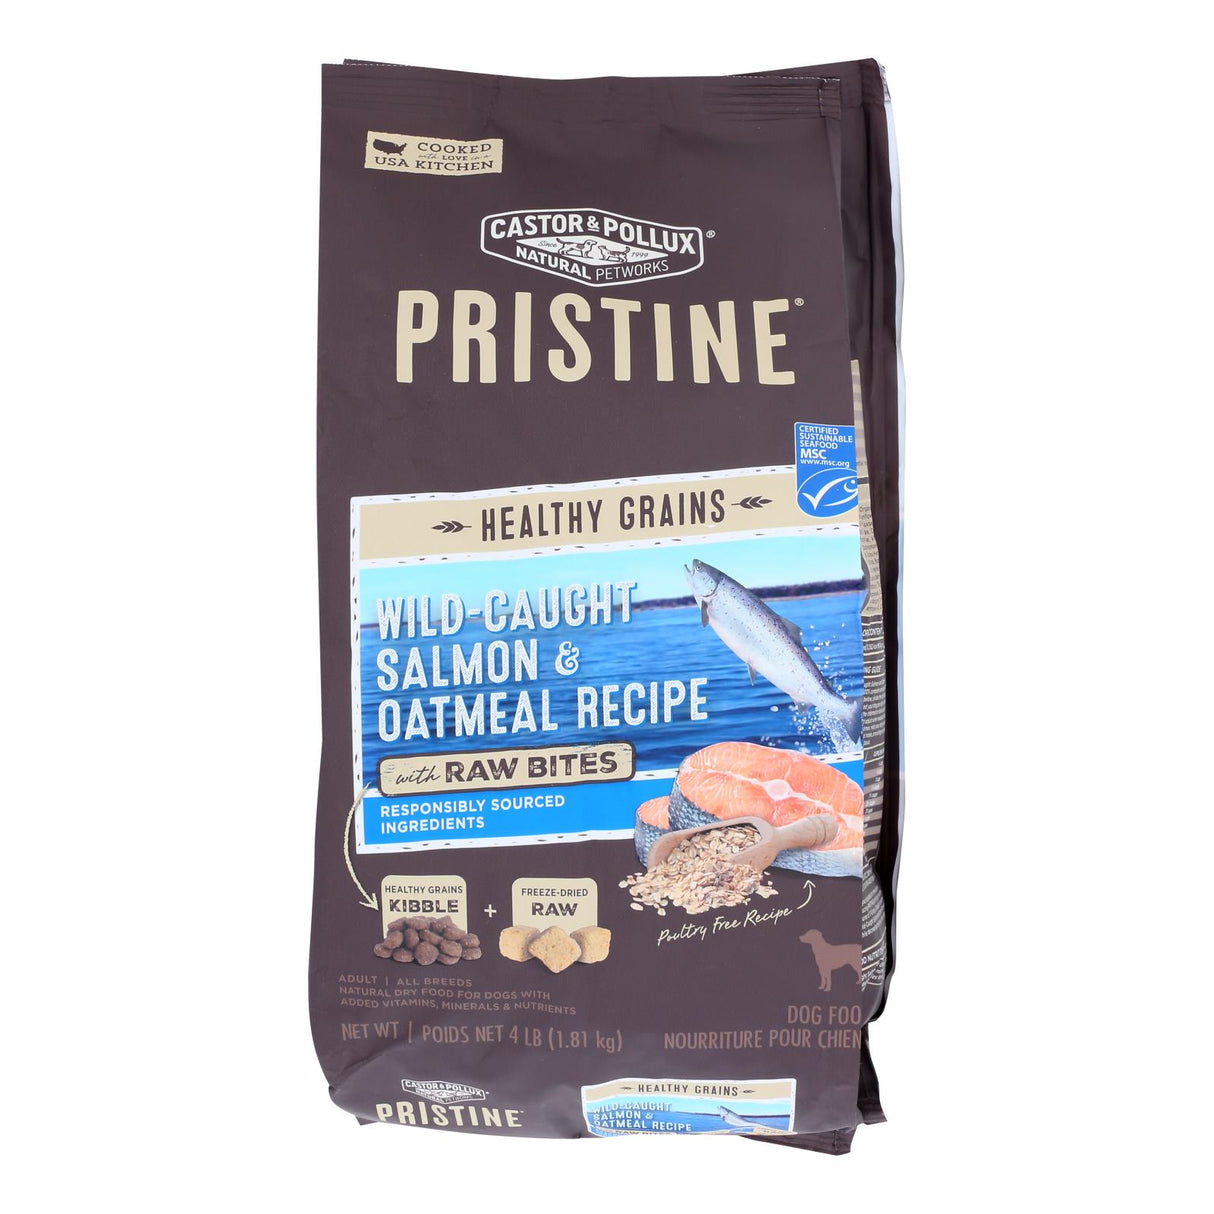 Castor & Pollux Prestream Salmon & Oatmeal Dry Dog Food, 4 lb - Case of 5 - Cozy Farm 